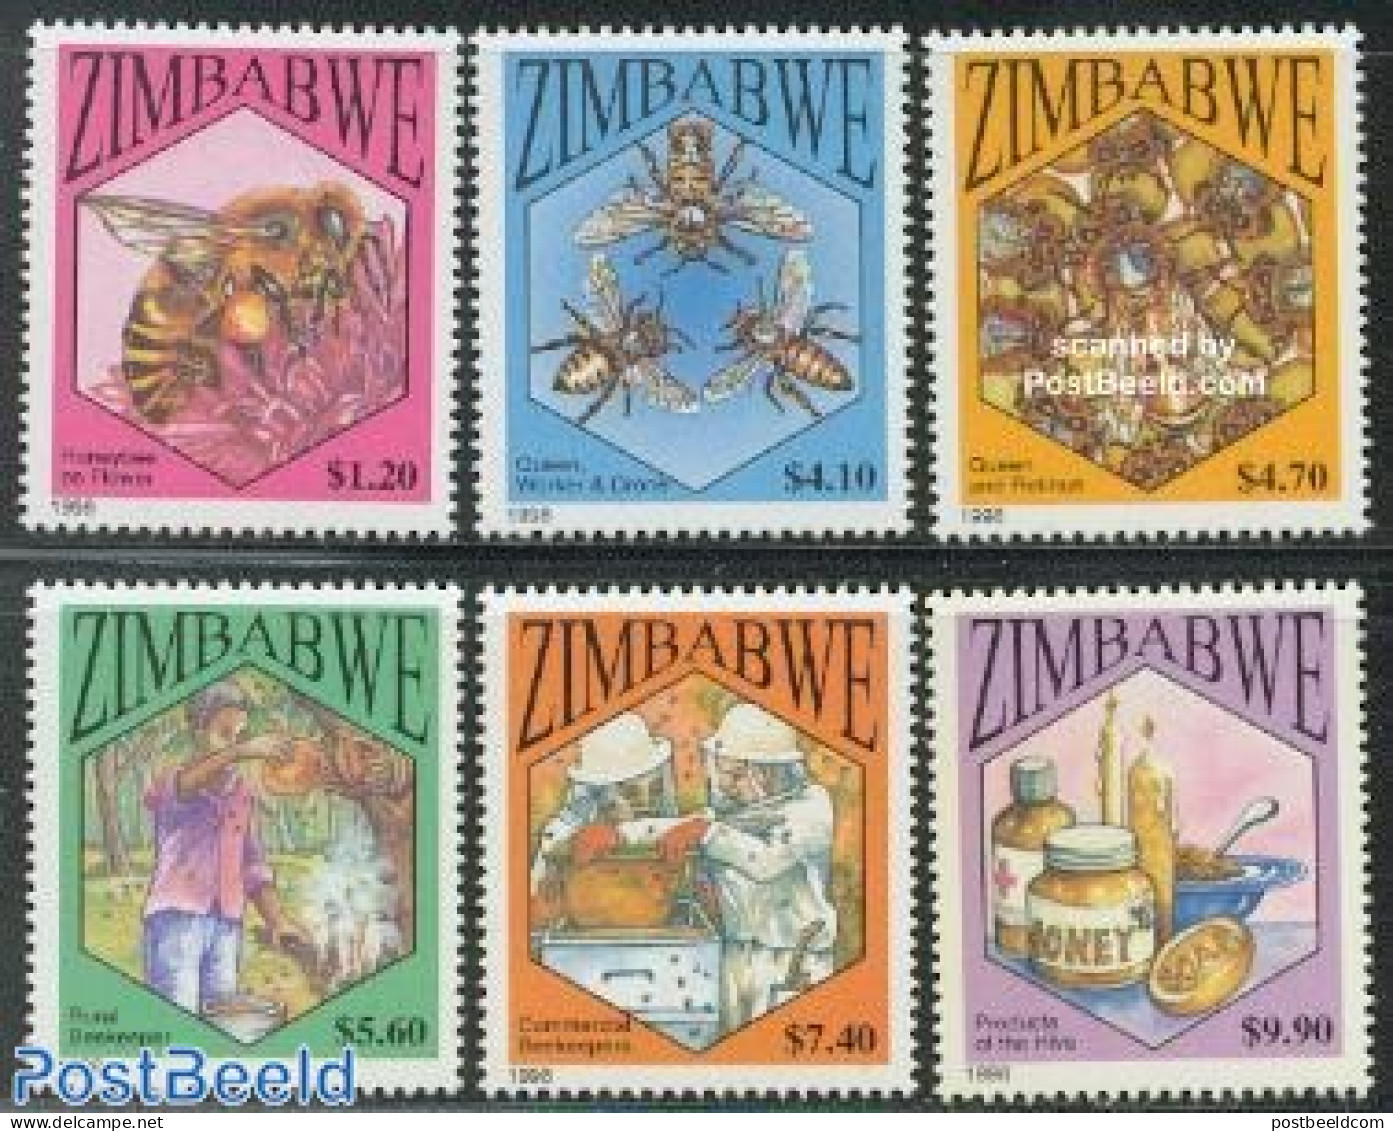 Zimbabwe 1998 Bee Keeping 6v, Mint NH, Nature - Bees - Insects - Zimbabwe (1980-...)